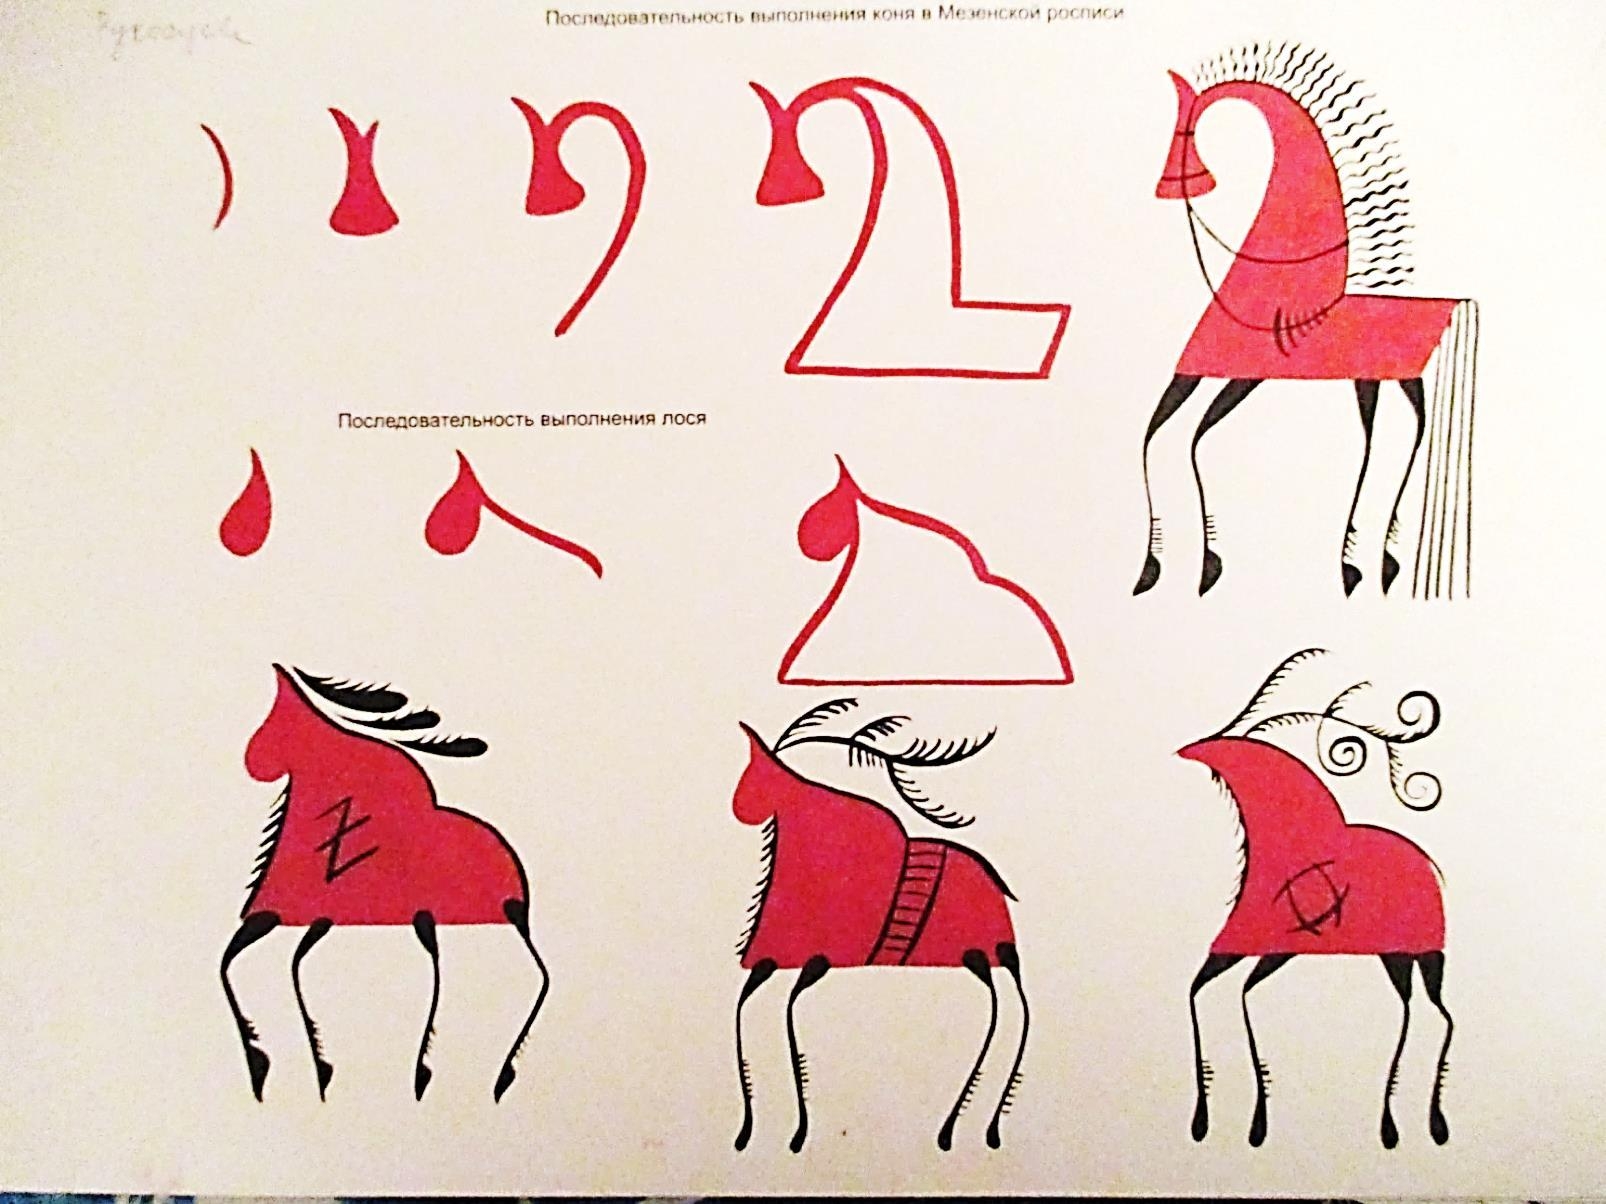 Мезенская роспись элементы росписи конь